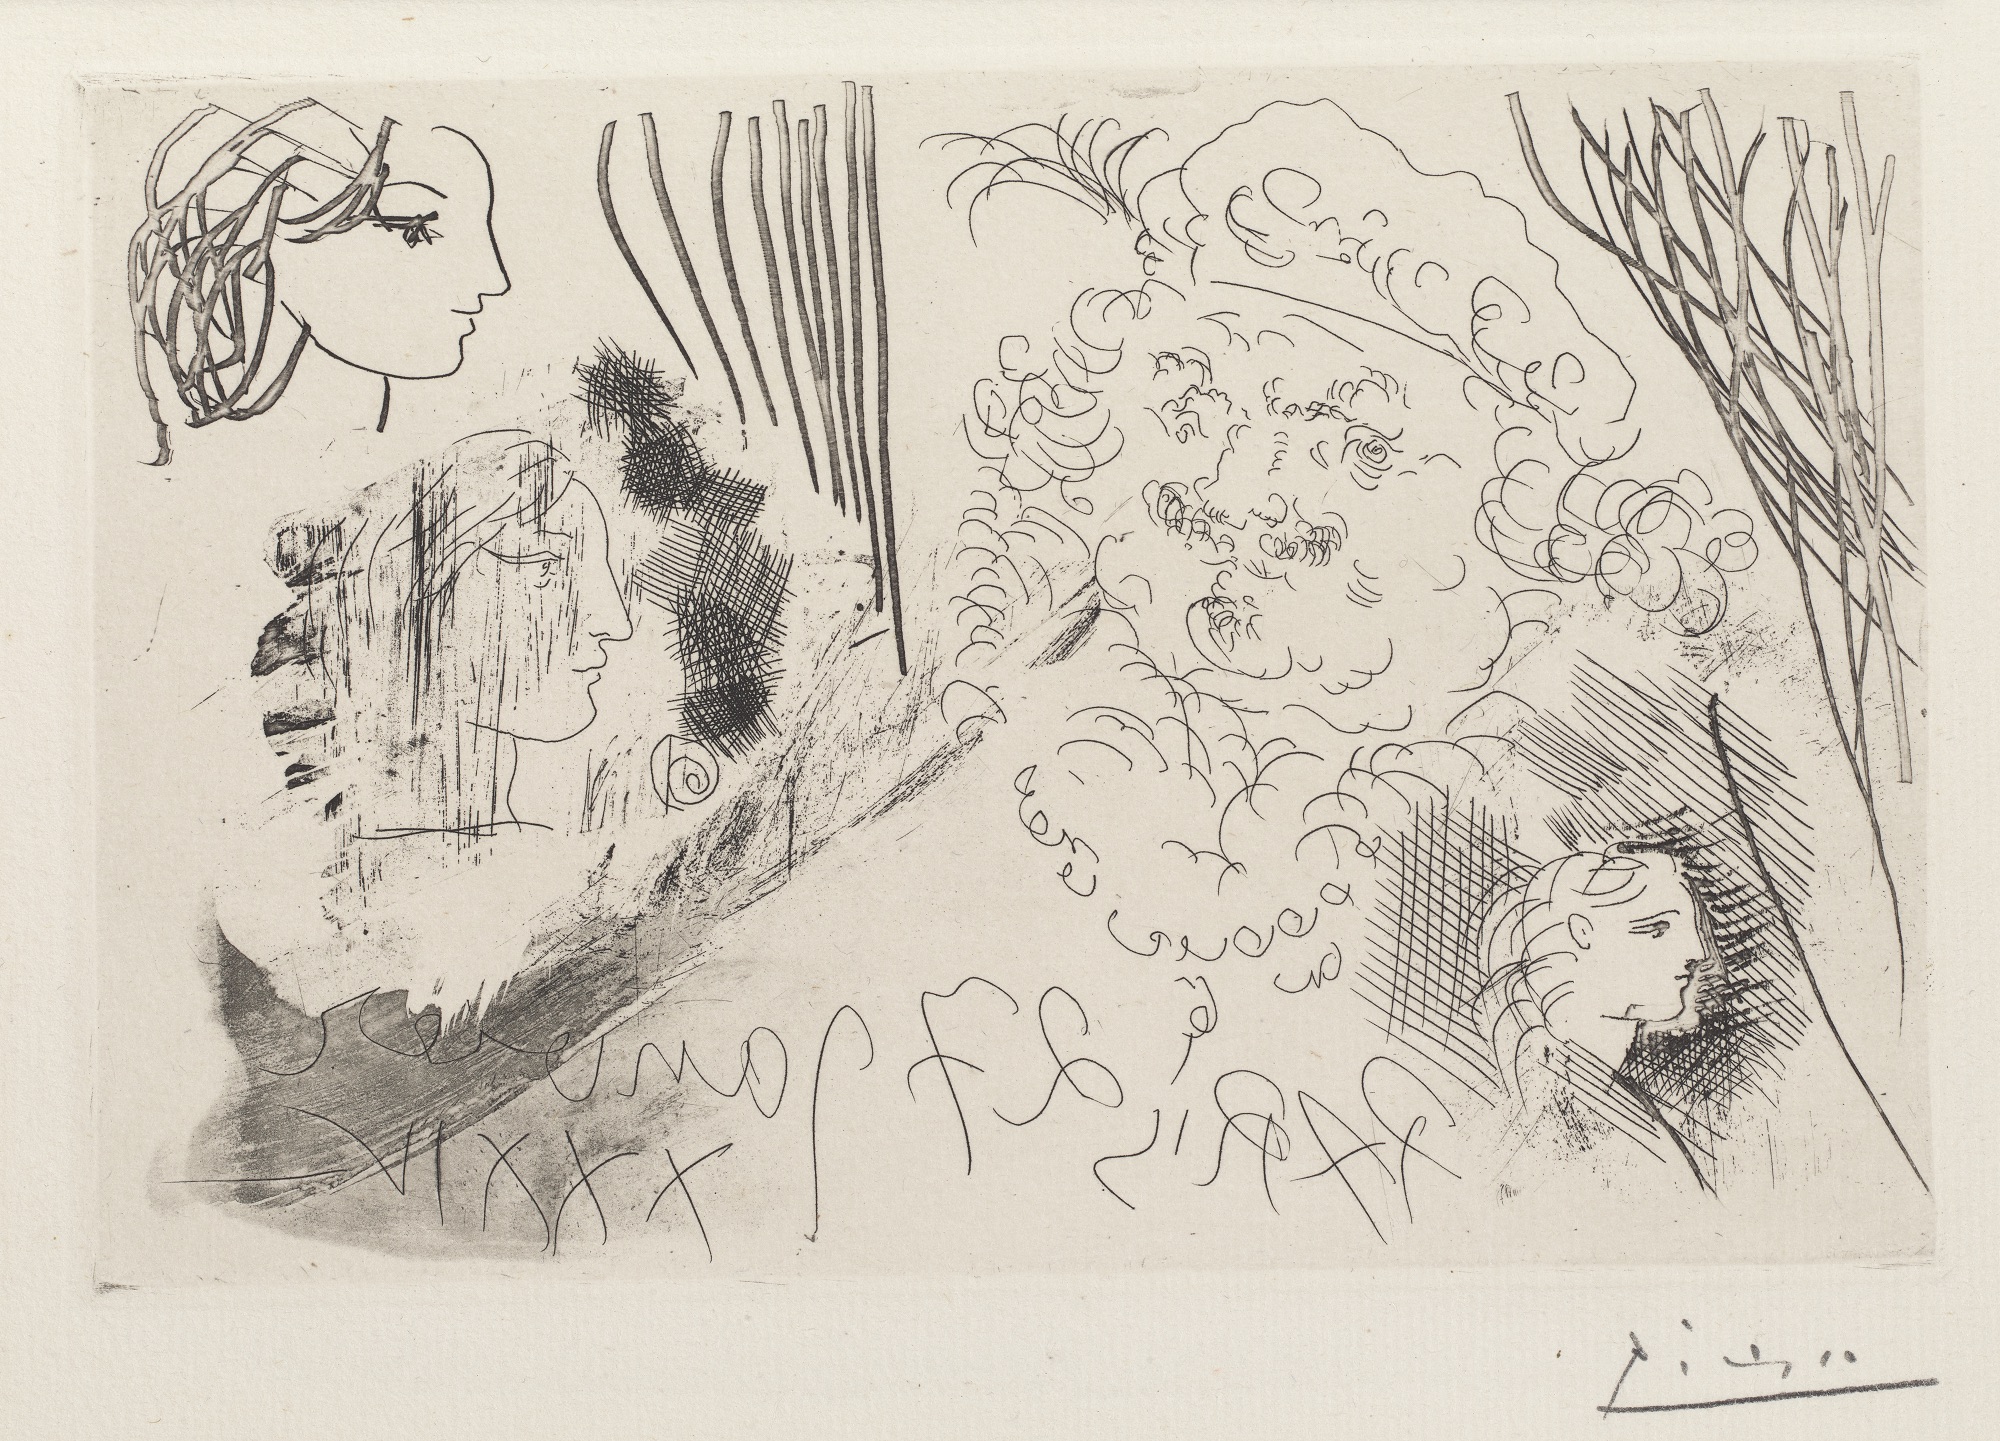 林布蘭與三位女性的頭像 by Pablo Picasso - 1934 年 - 139 x 208 毫米 